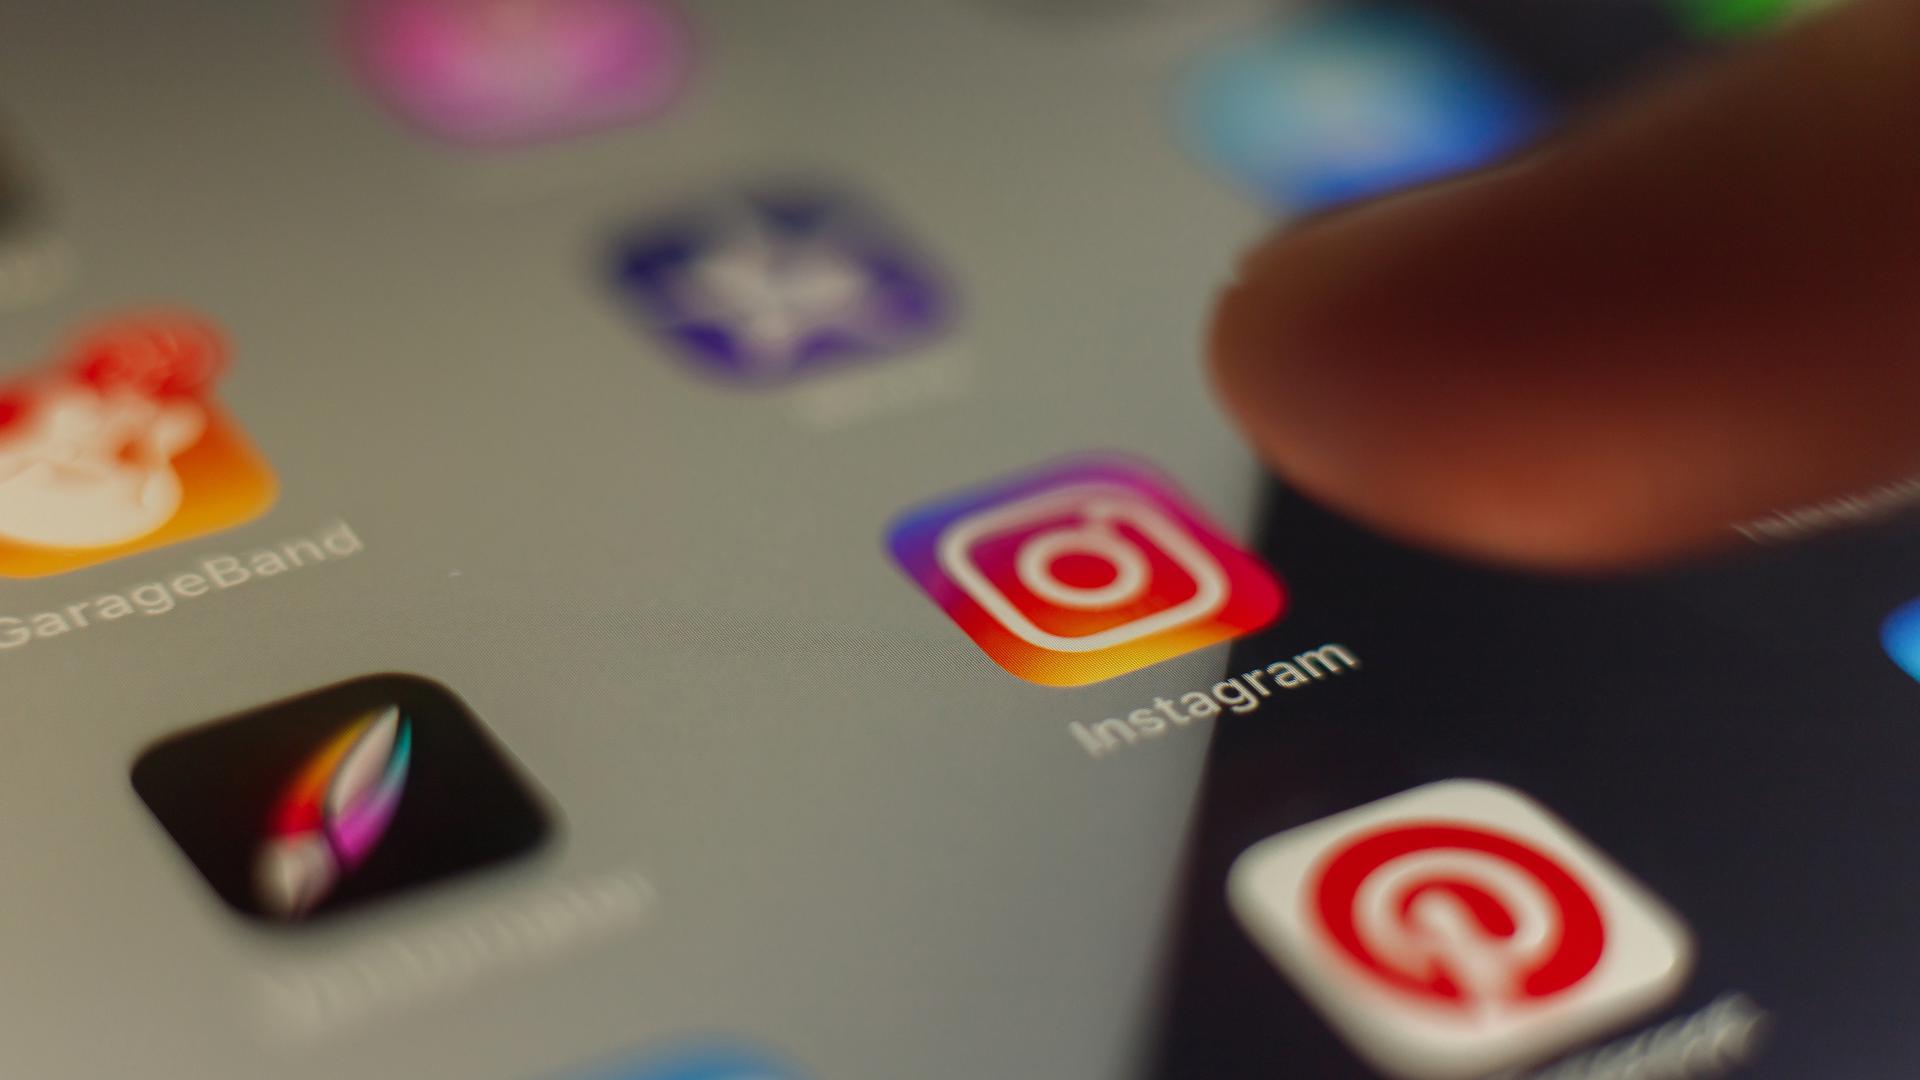 Instagram est le 2e réseau social le plus utilisé au Luxembourg, derrière Facebook. Les deux plateformes appartiennent au même groupe, Meta.